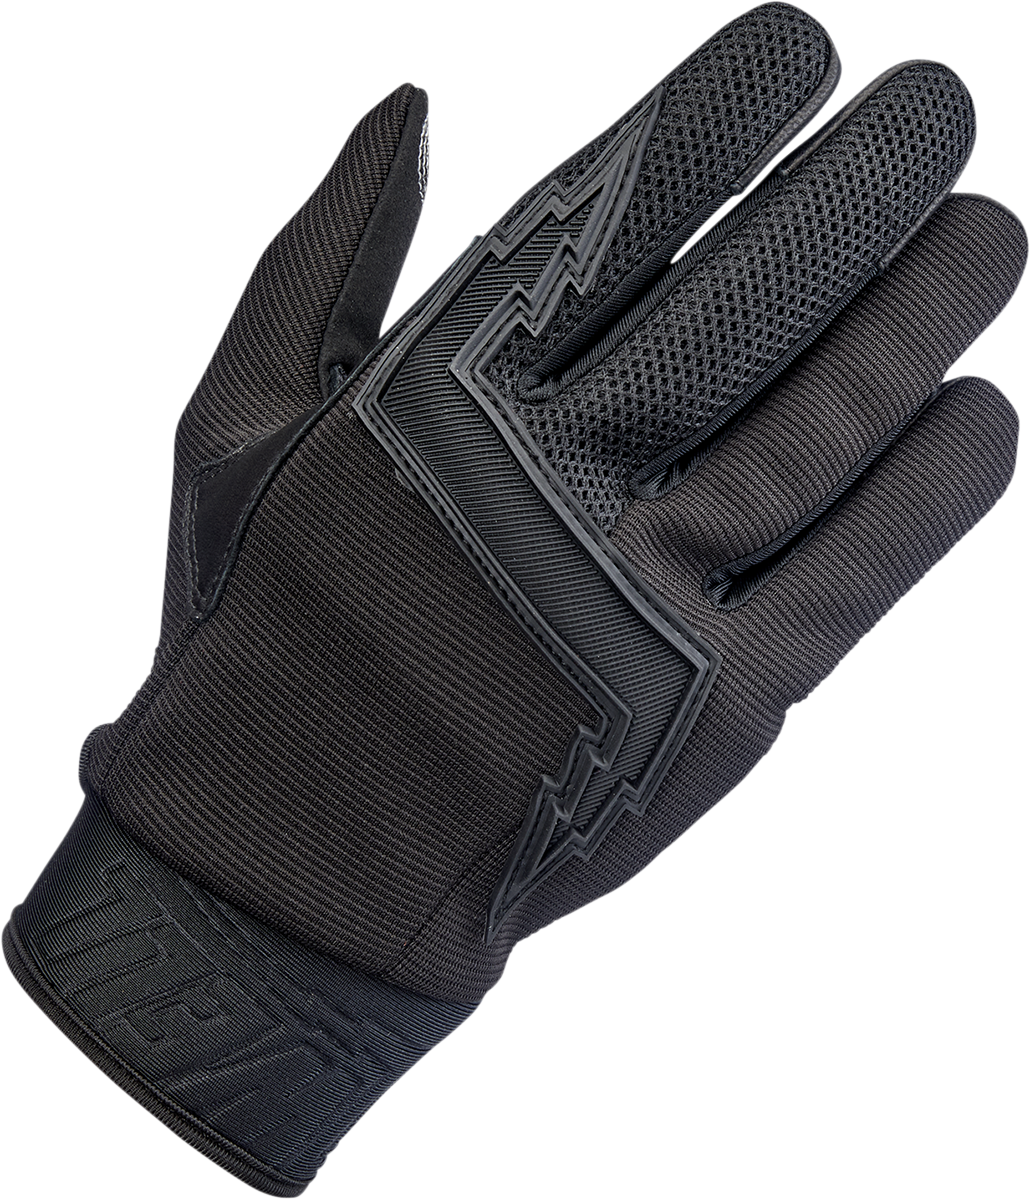 BILTWELL Baja Gloves - Black